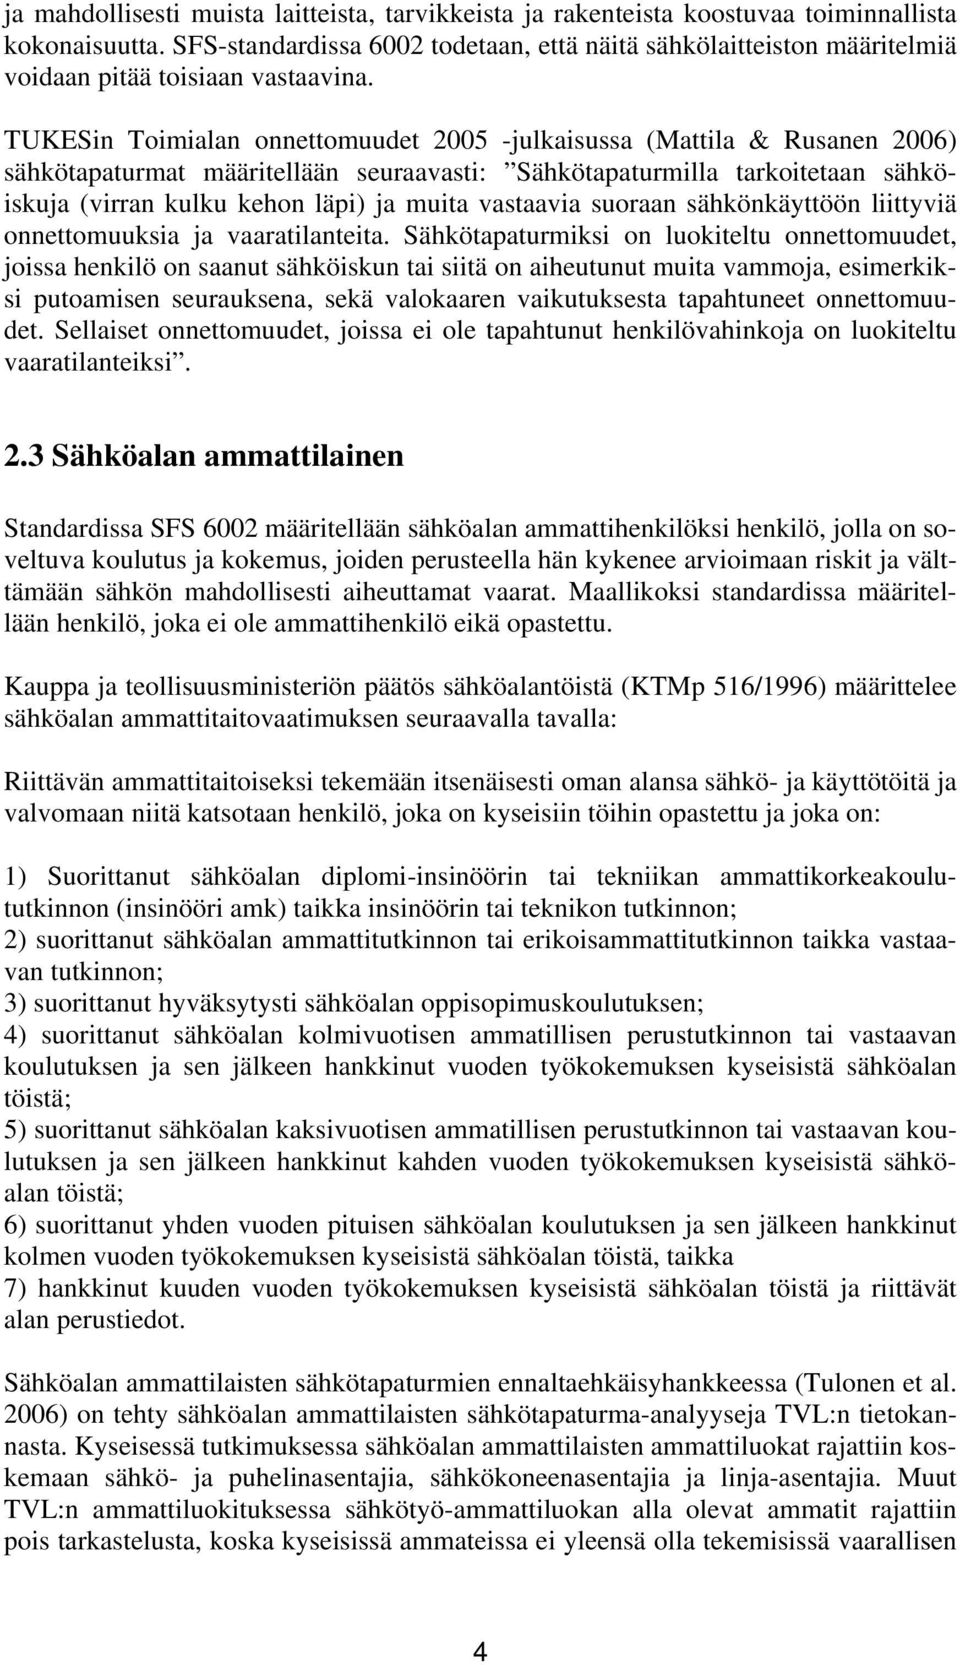 TUKESin Toimialan onnettomuudet 2005 -julkaisussa (Mattila & Rusanen 2006) sähkötapaturmat määritellään seuraavasti: Sähkötapaturmilla tarkoitetaan sähköiskuja (virran kulku kehon läpi) ja muita